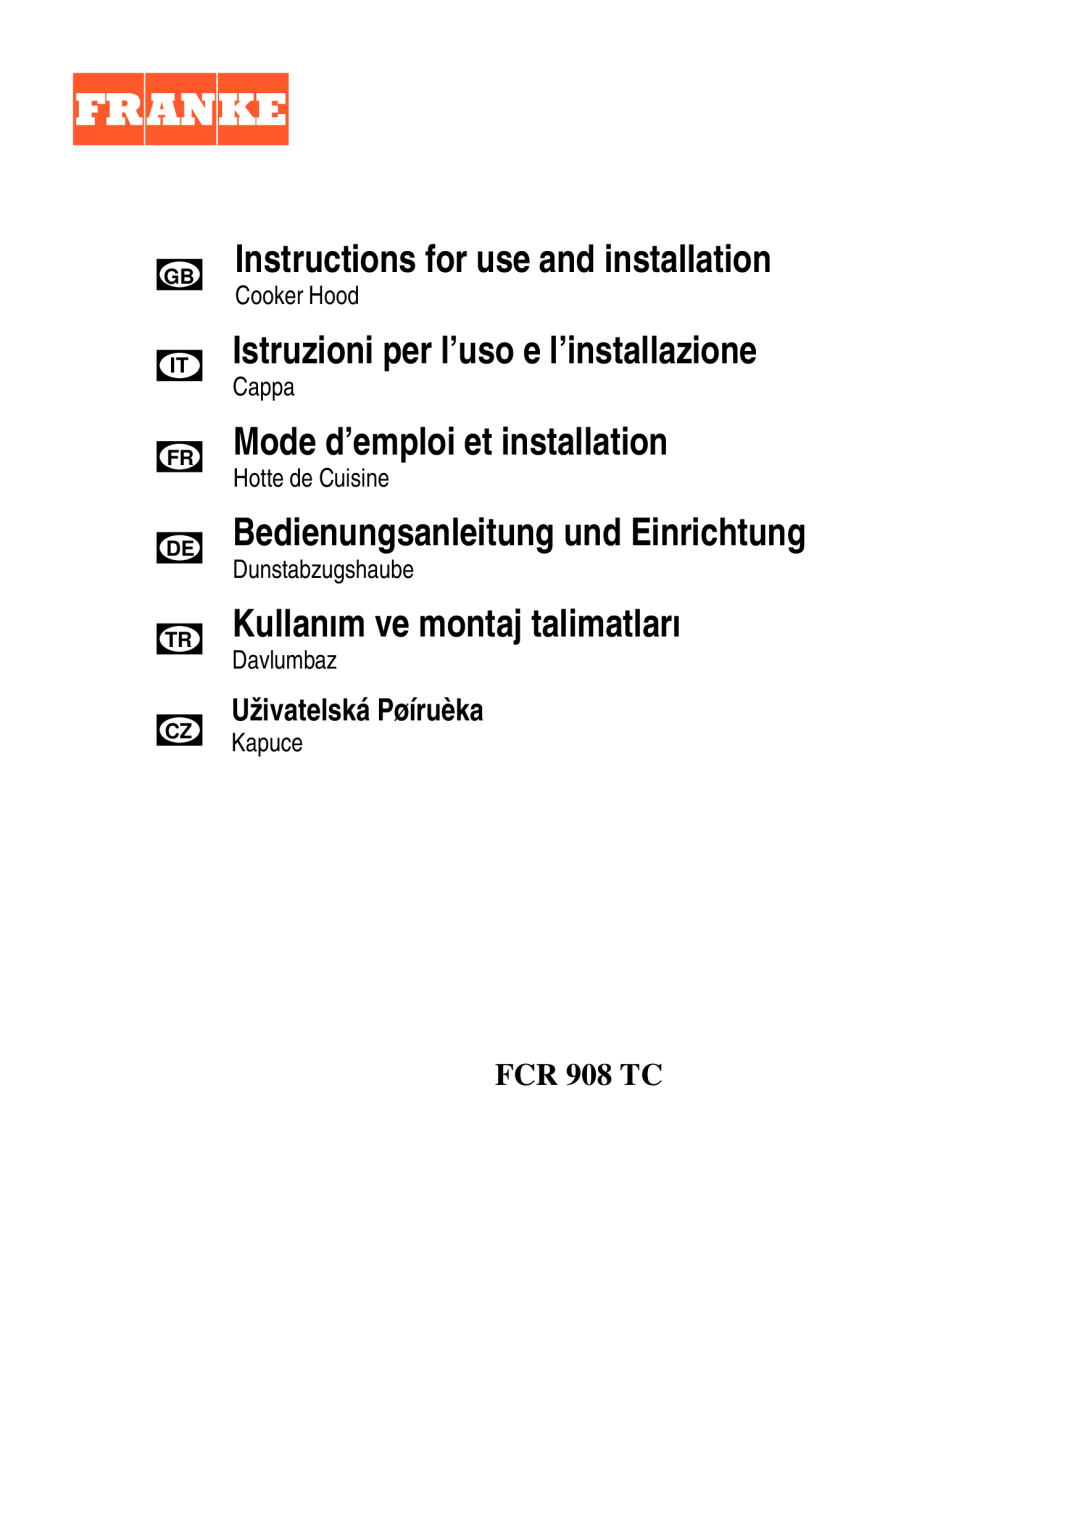 Franke Consumer Products FCR 908 TC manual Instructions for use and installation, Istruzioni per l’uso e l’installazione 